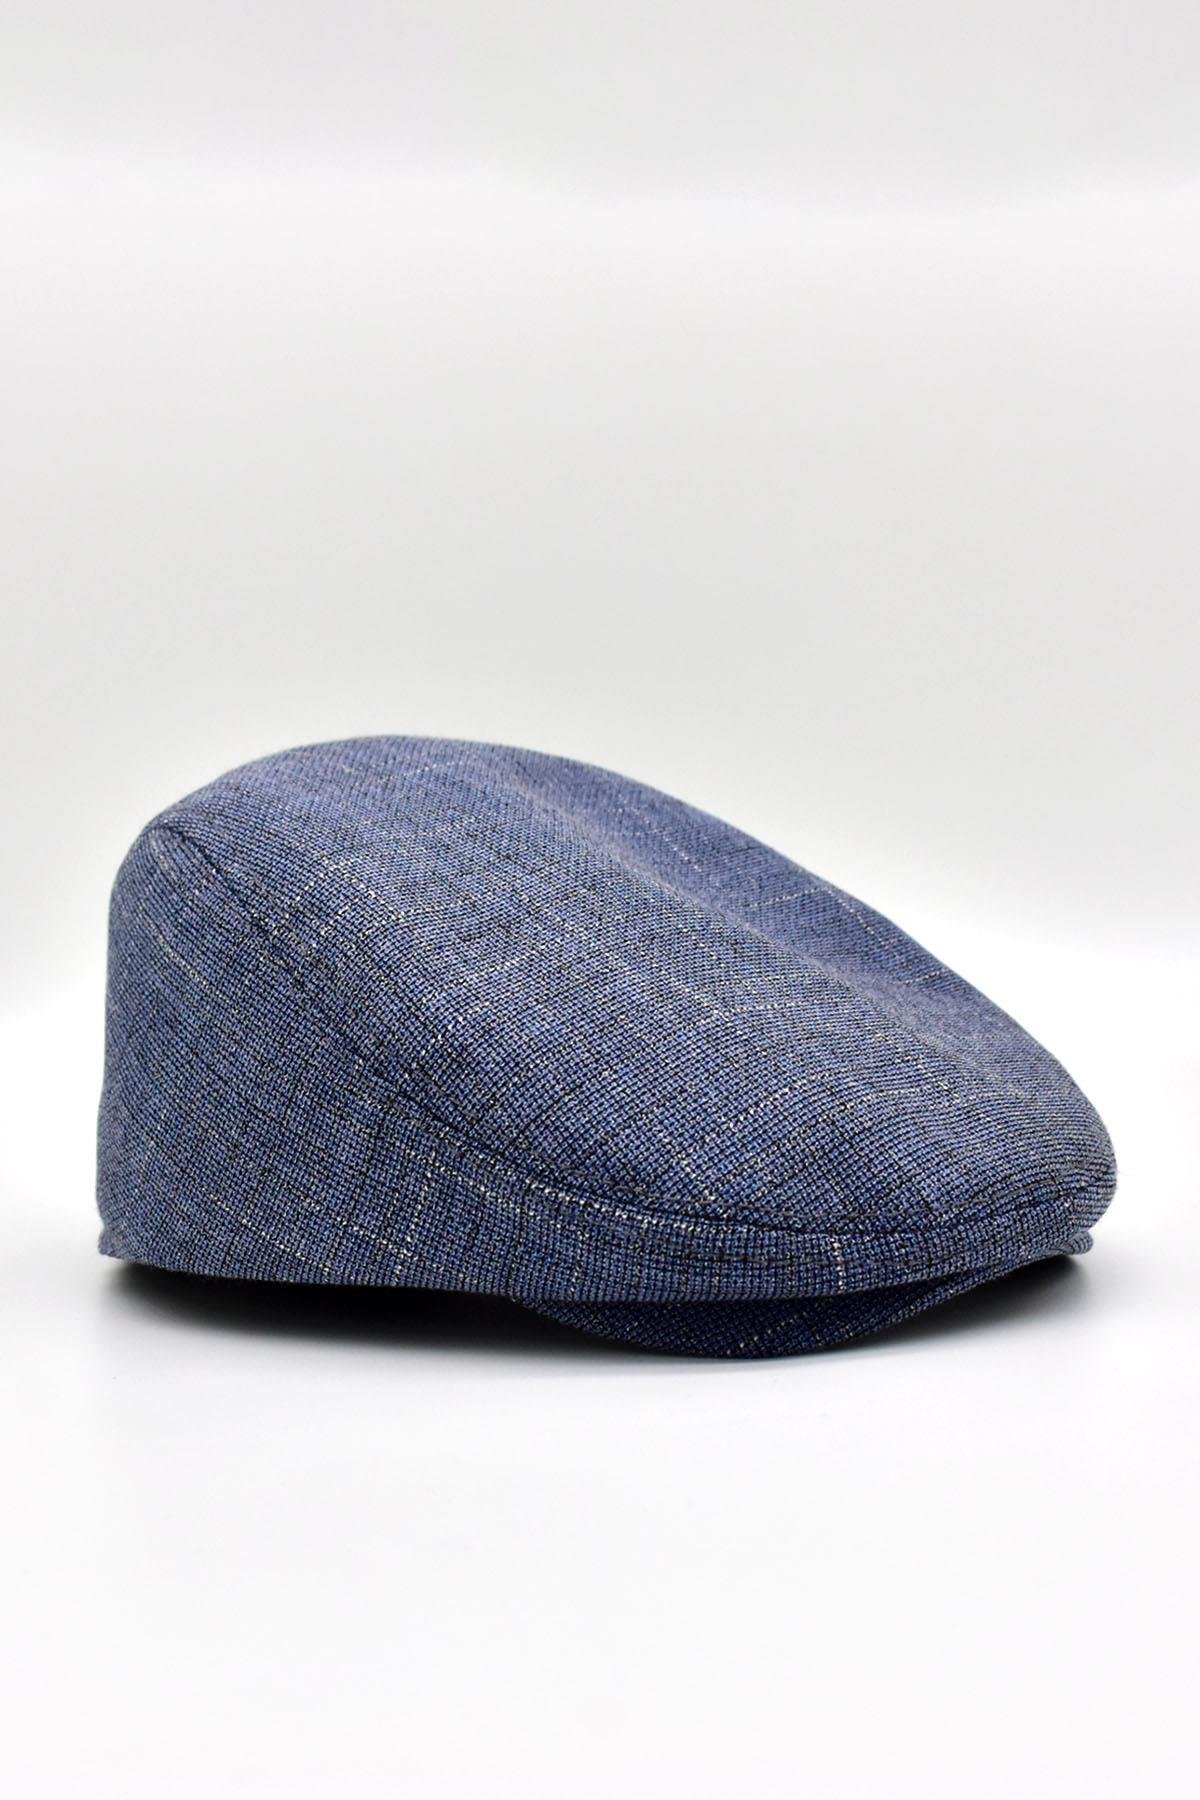 Külah Erkek Şapka Tweed Keten Yazlık Kasket KLH0546